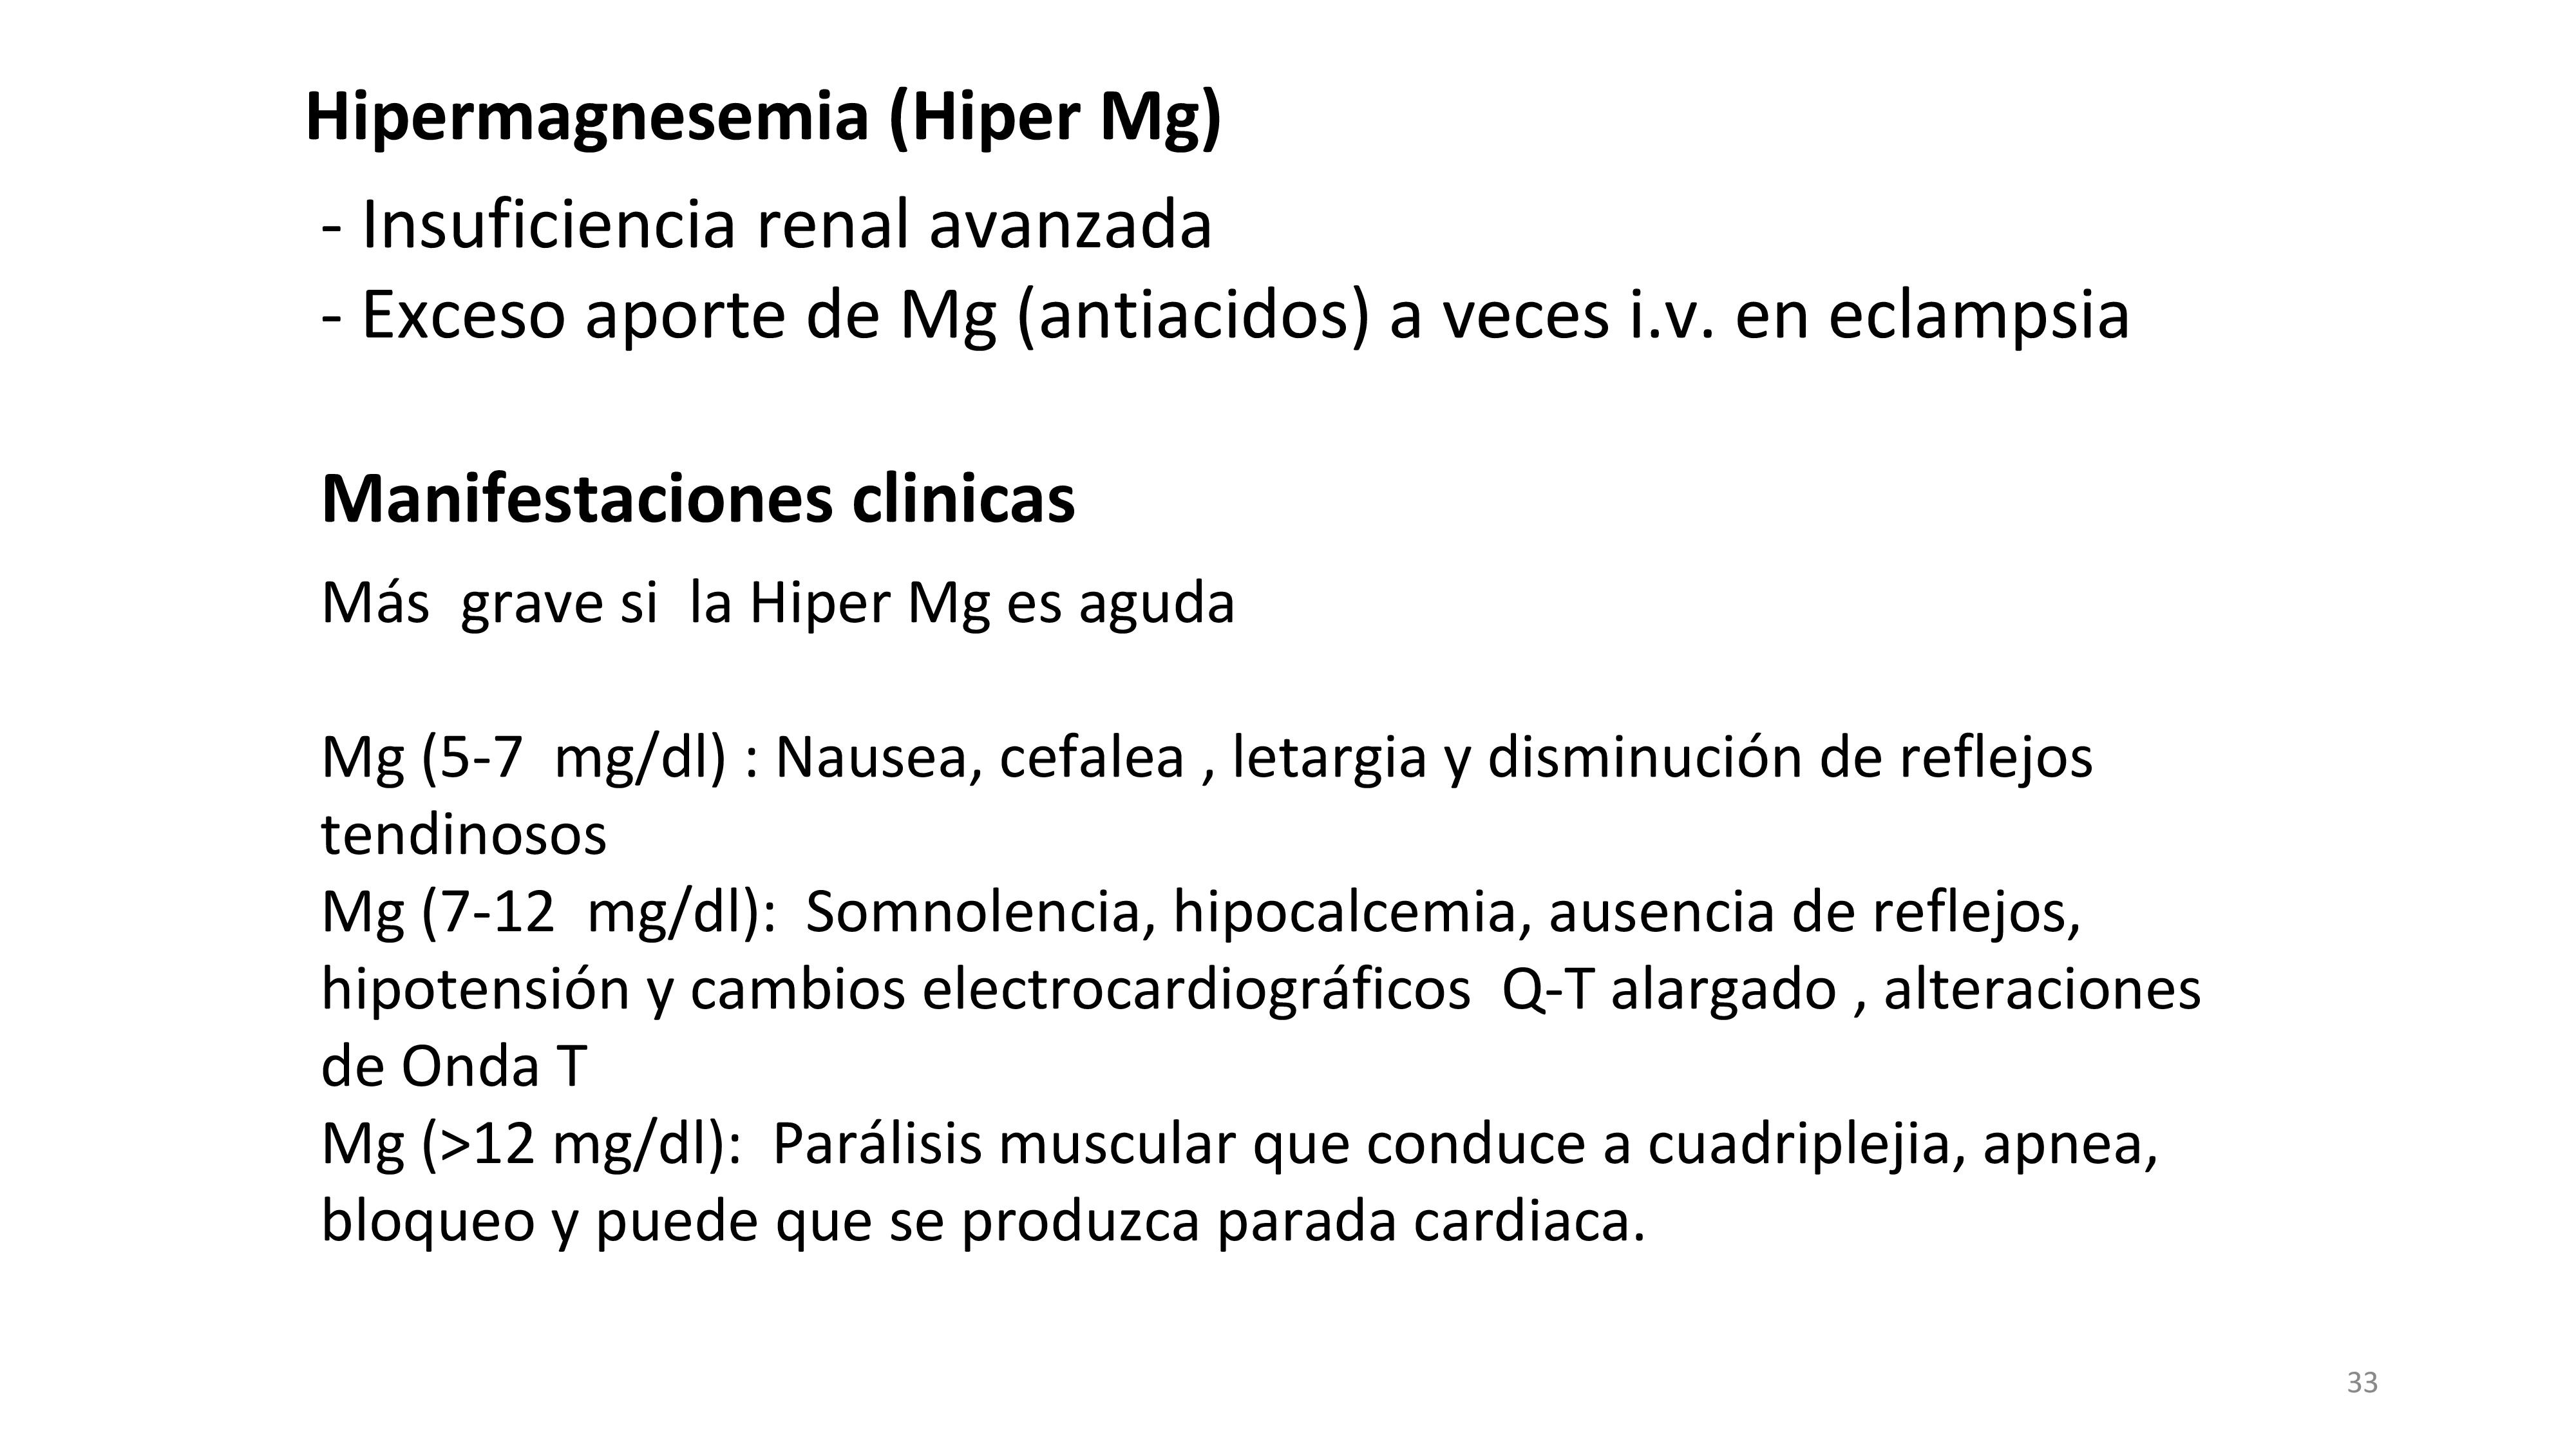 La hipermagnesemia ocurre en dos situaciones: cuando hay una disminución del Filtrado glomerular (FG) o si existe un gran aporte de Mg.Las manifestaciones clínicas son mas graves si la hiper Mg se desarrolla de forma aguda. Se resumen las manifestaciones clínicas de la hiper Mg de acuerdo a los niveles de Mg